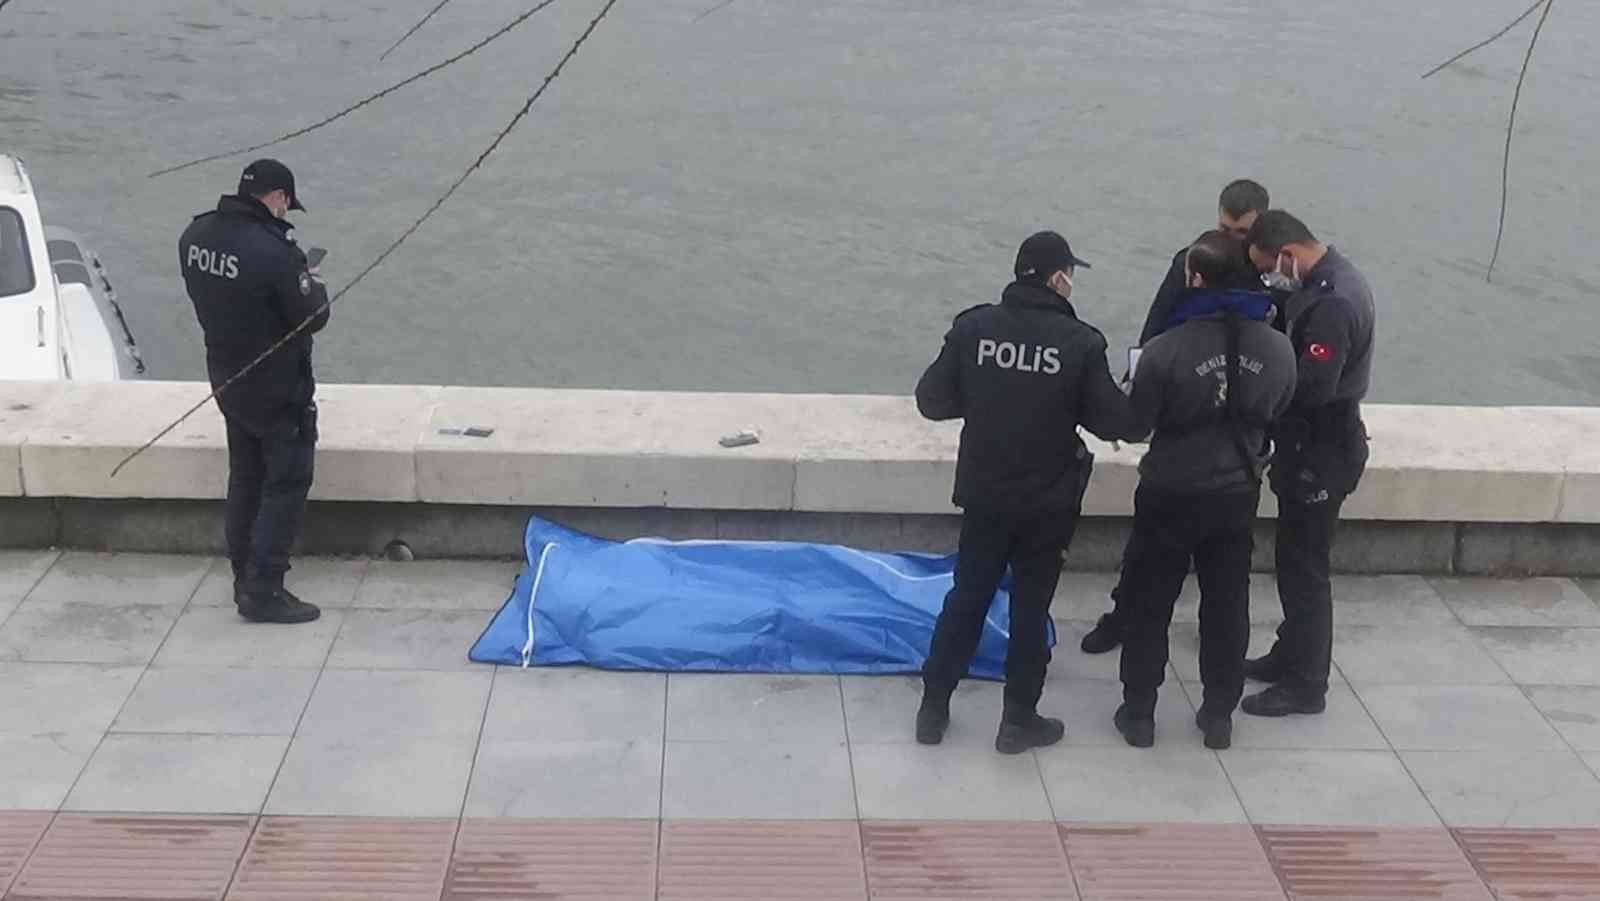 Denizden, üniversite öğrencisinin cesedi çıktı #izmir